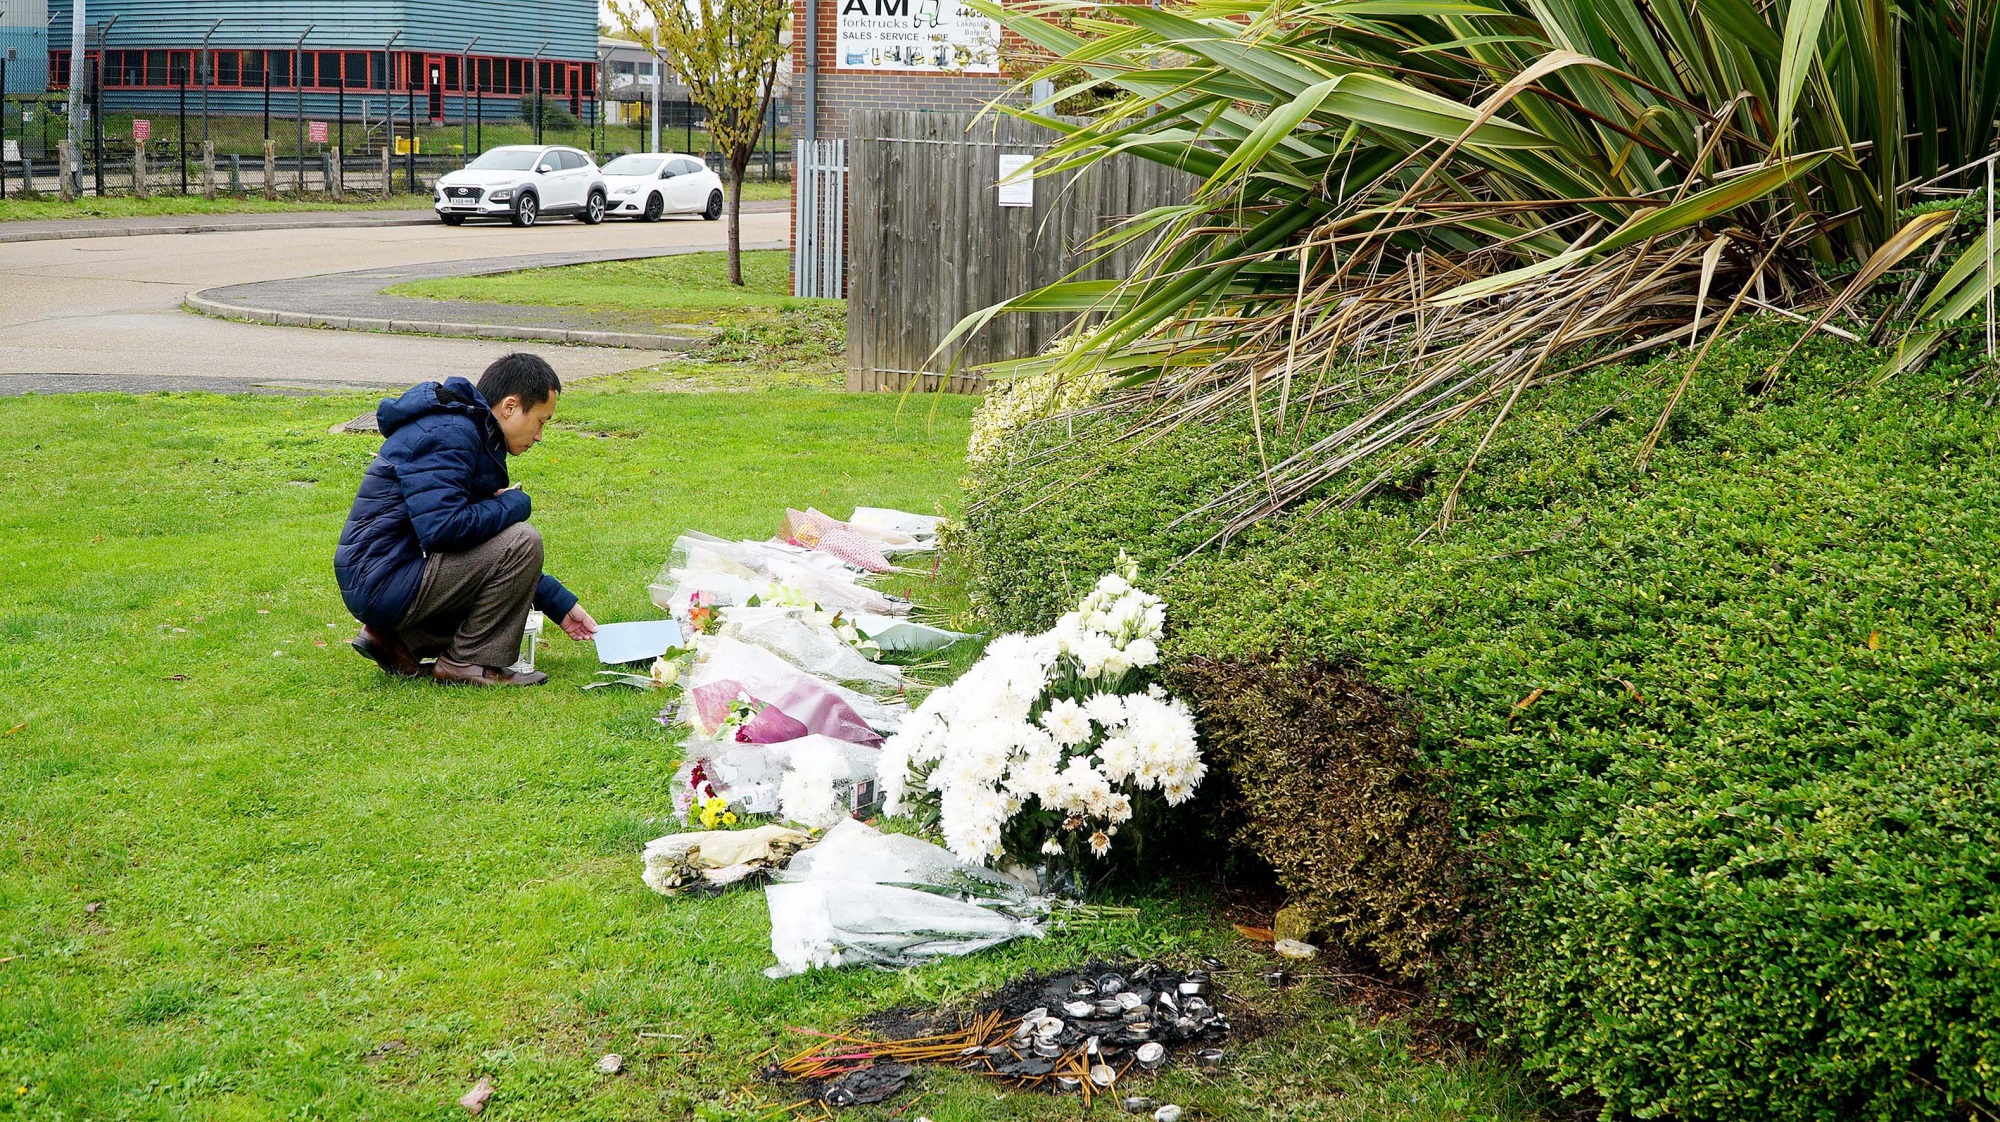 Thảm kịch 39 người Việt ở Anh: Gia đình nạn nhân mong chờ chủ hãng container bồi thường sau 3 năm nén đau thương - Ảnh 1